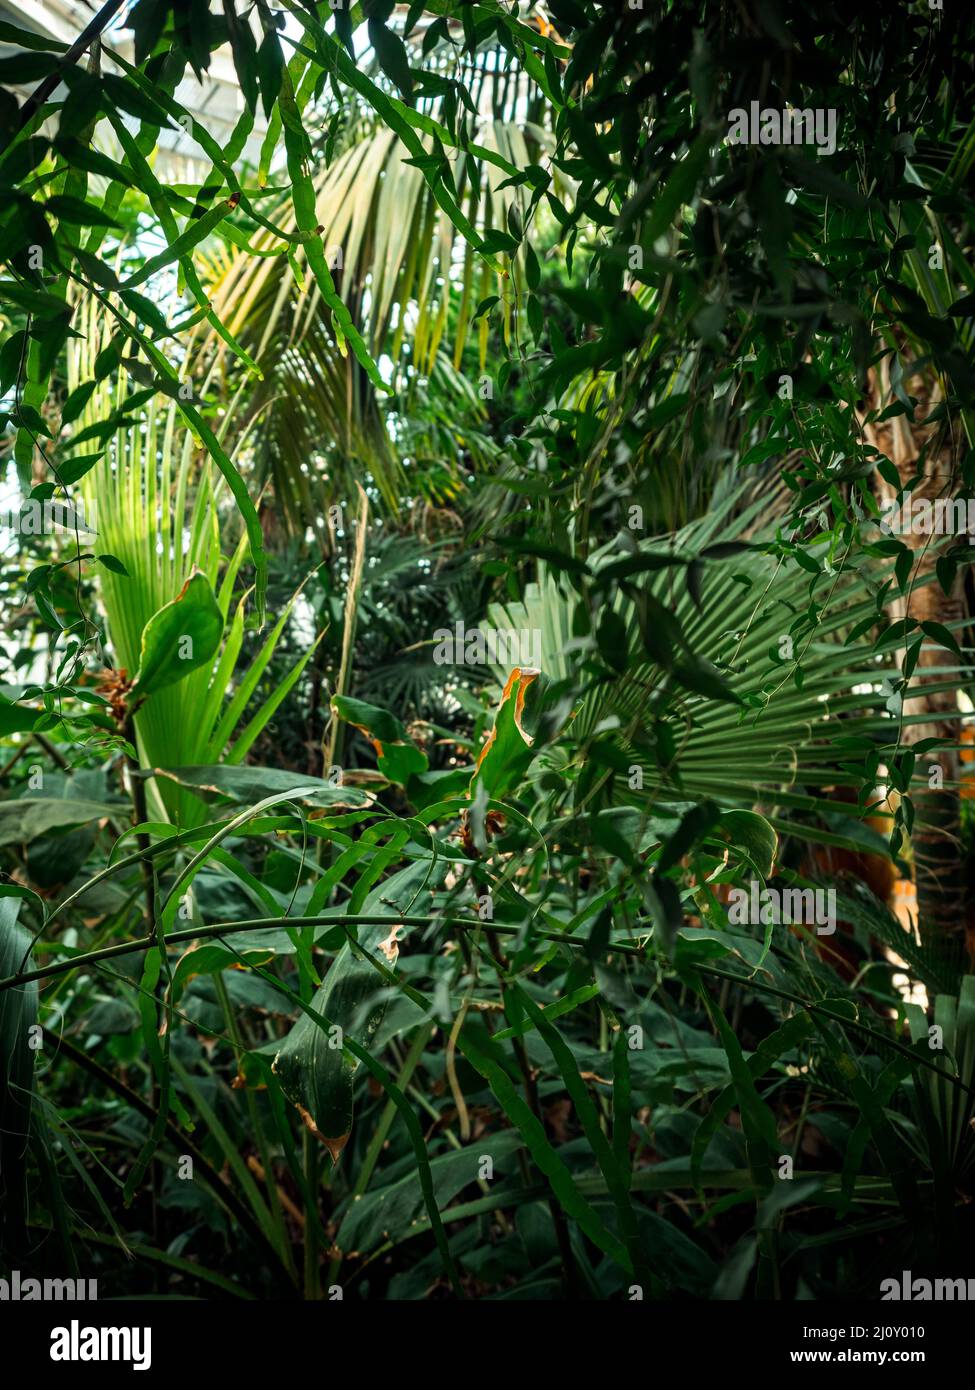 Hojas de plantas tropicales y exuberantes helechos verdes, palmeras y follaje en la selva. Tomado en los jardines botánicos de Ginebra, Suiza. Foto de stock